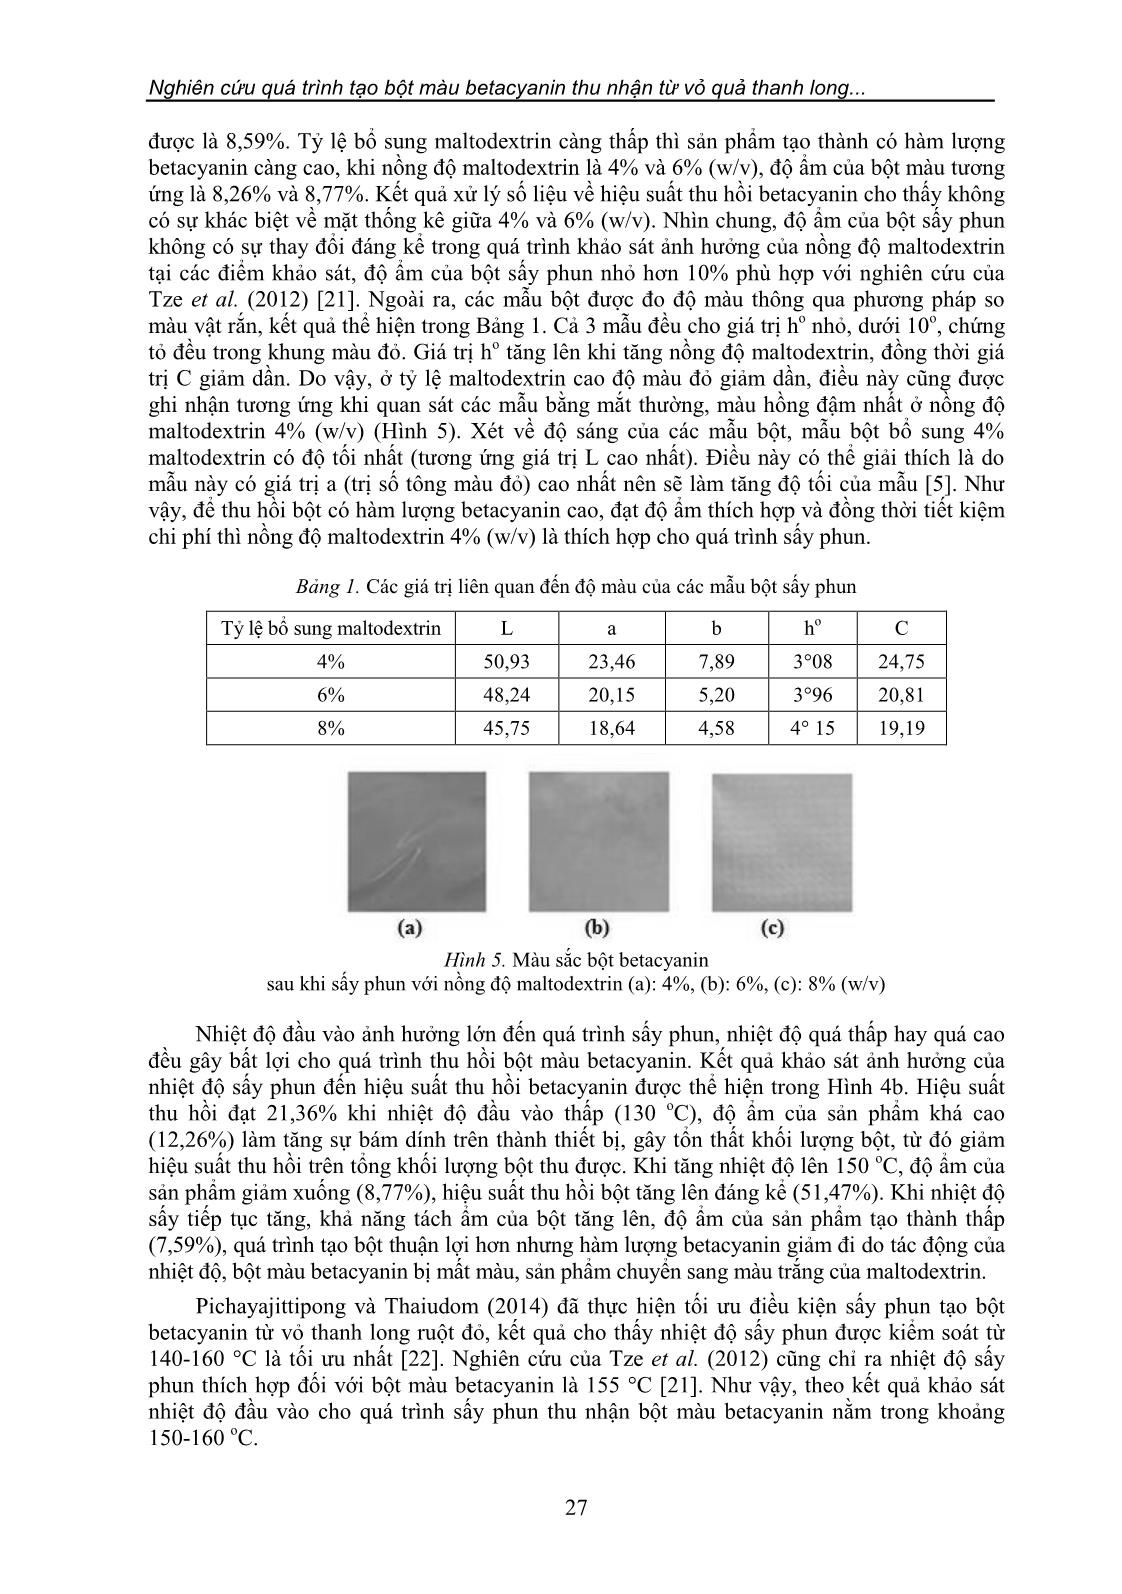 Nghiên cứu quá trình tạo bột màu Betacyanin thu nhận từ vỏ quả thanh long (Hylocereus undatus) trang 7